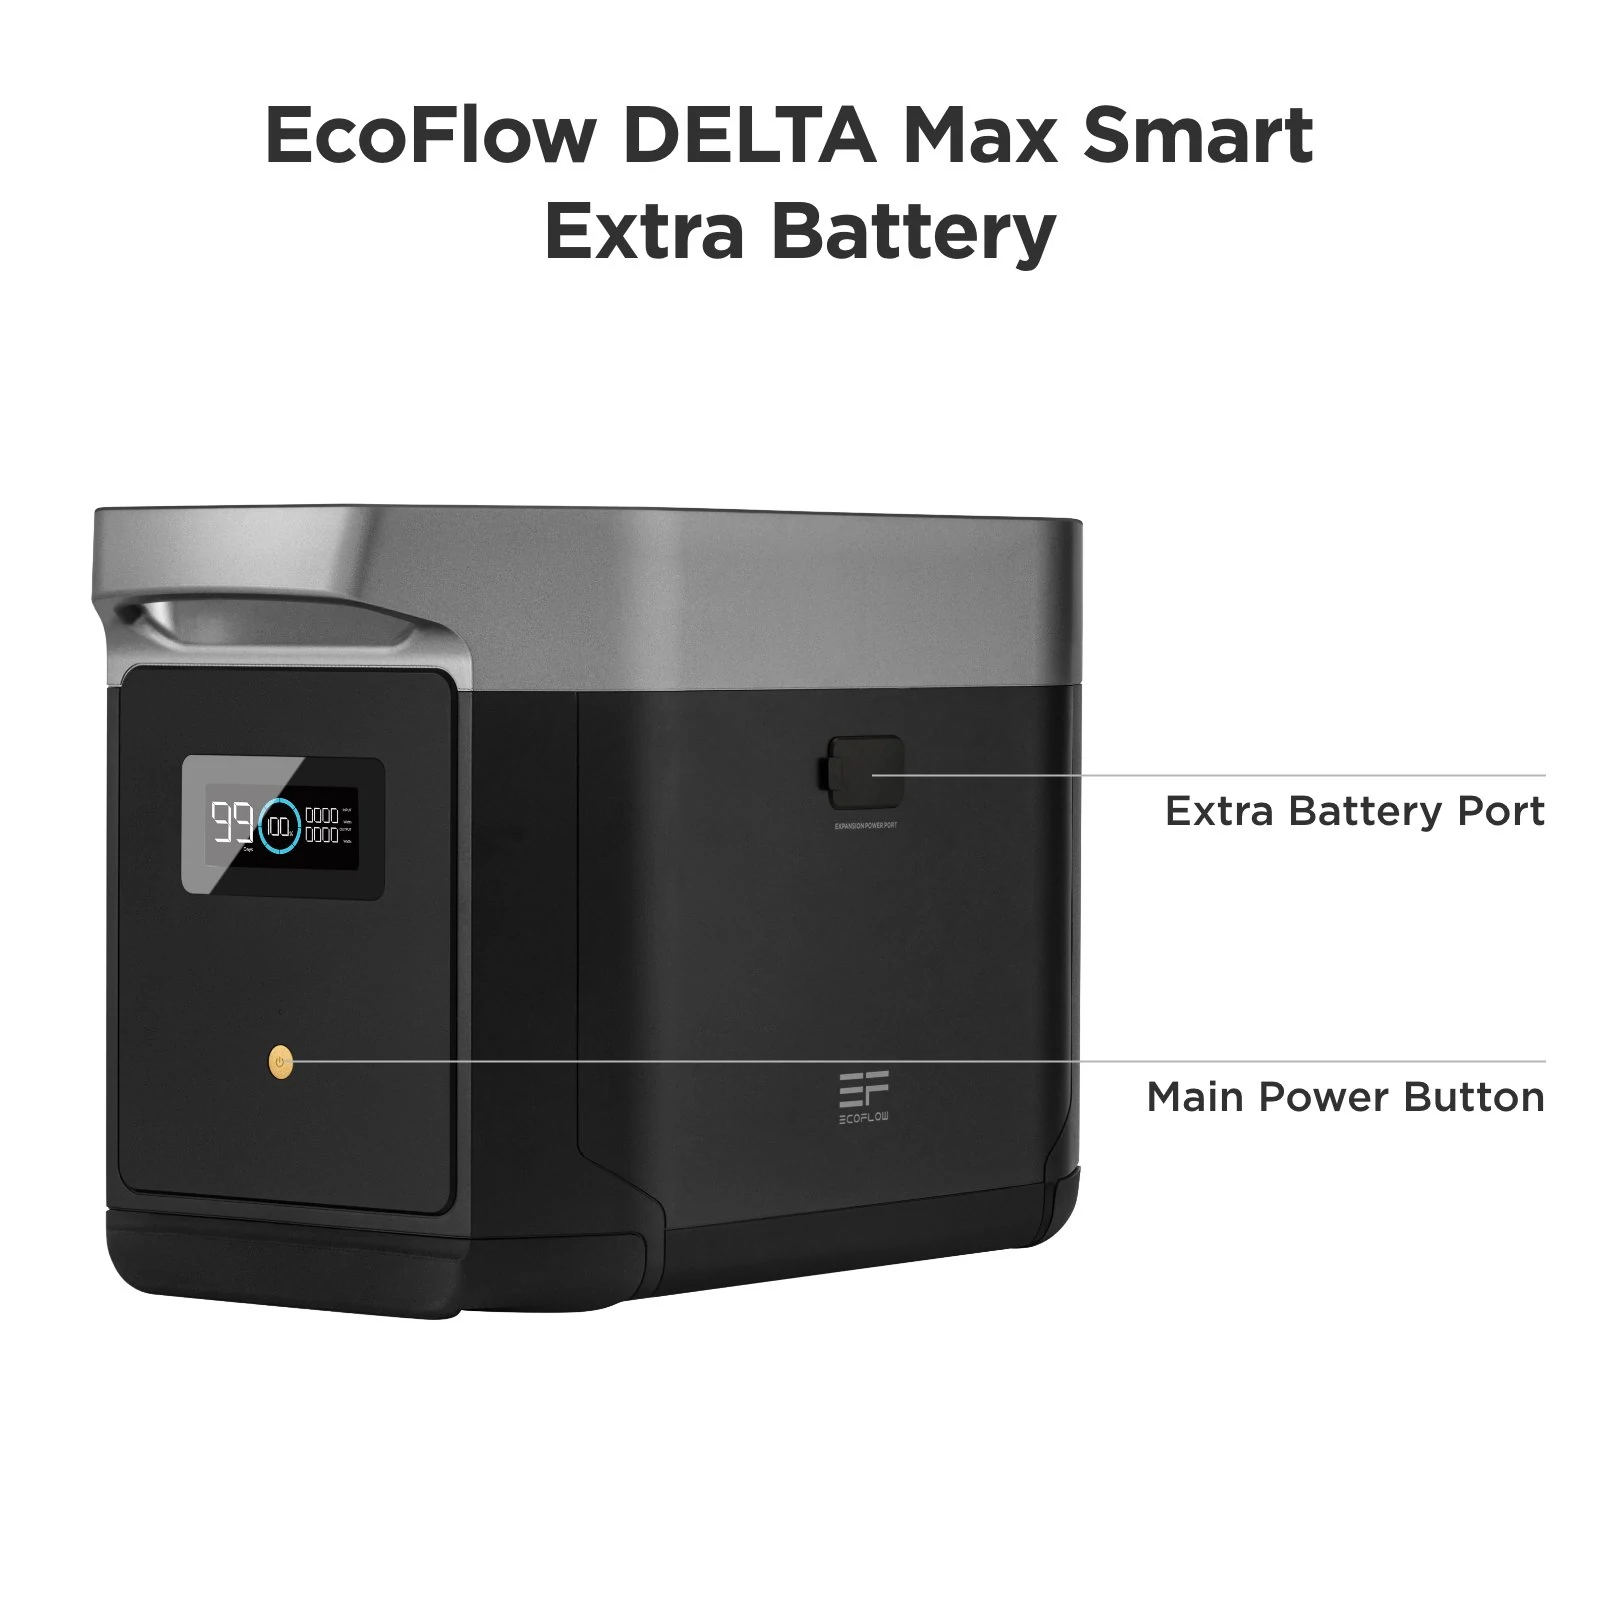 ecoflow-ecoflow-delta-max-extra-battery-28435862224969_1024x1024@2x